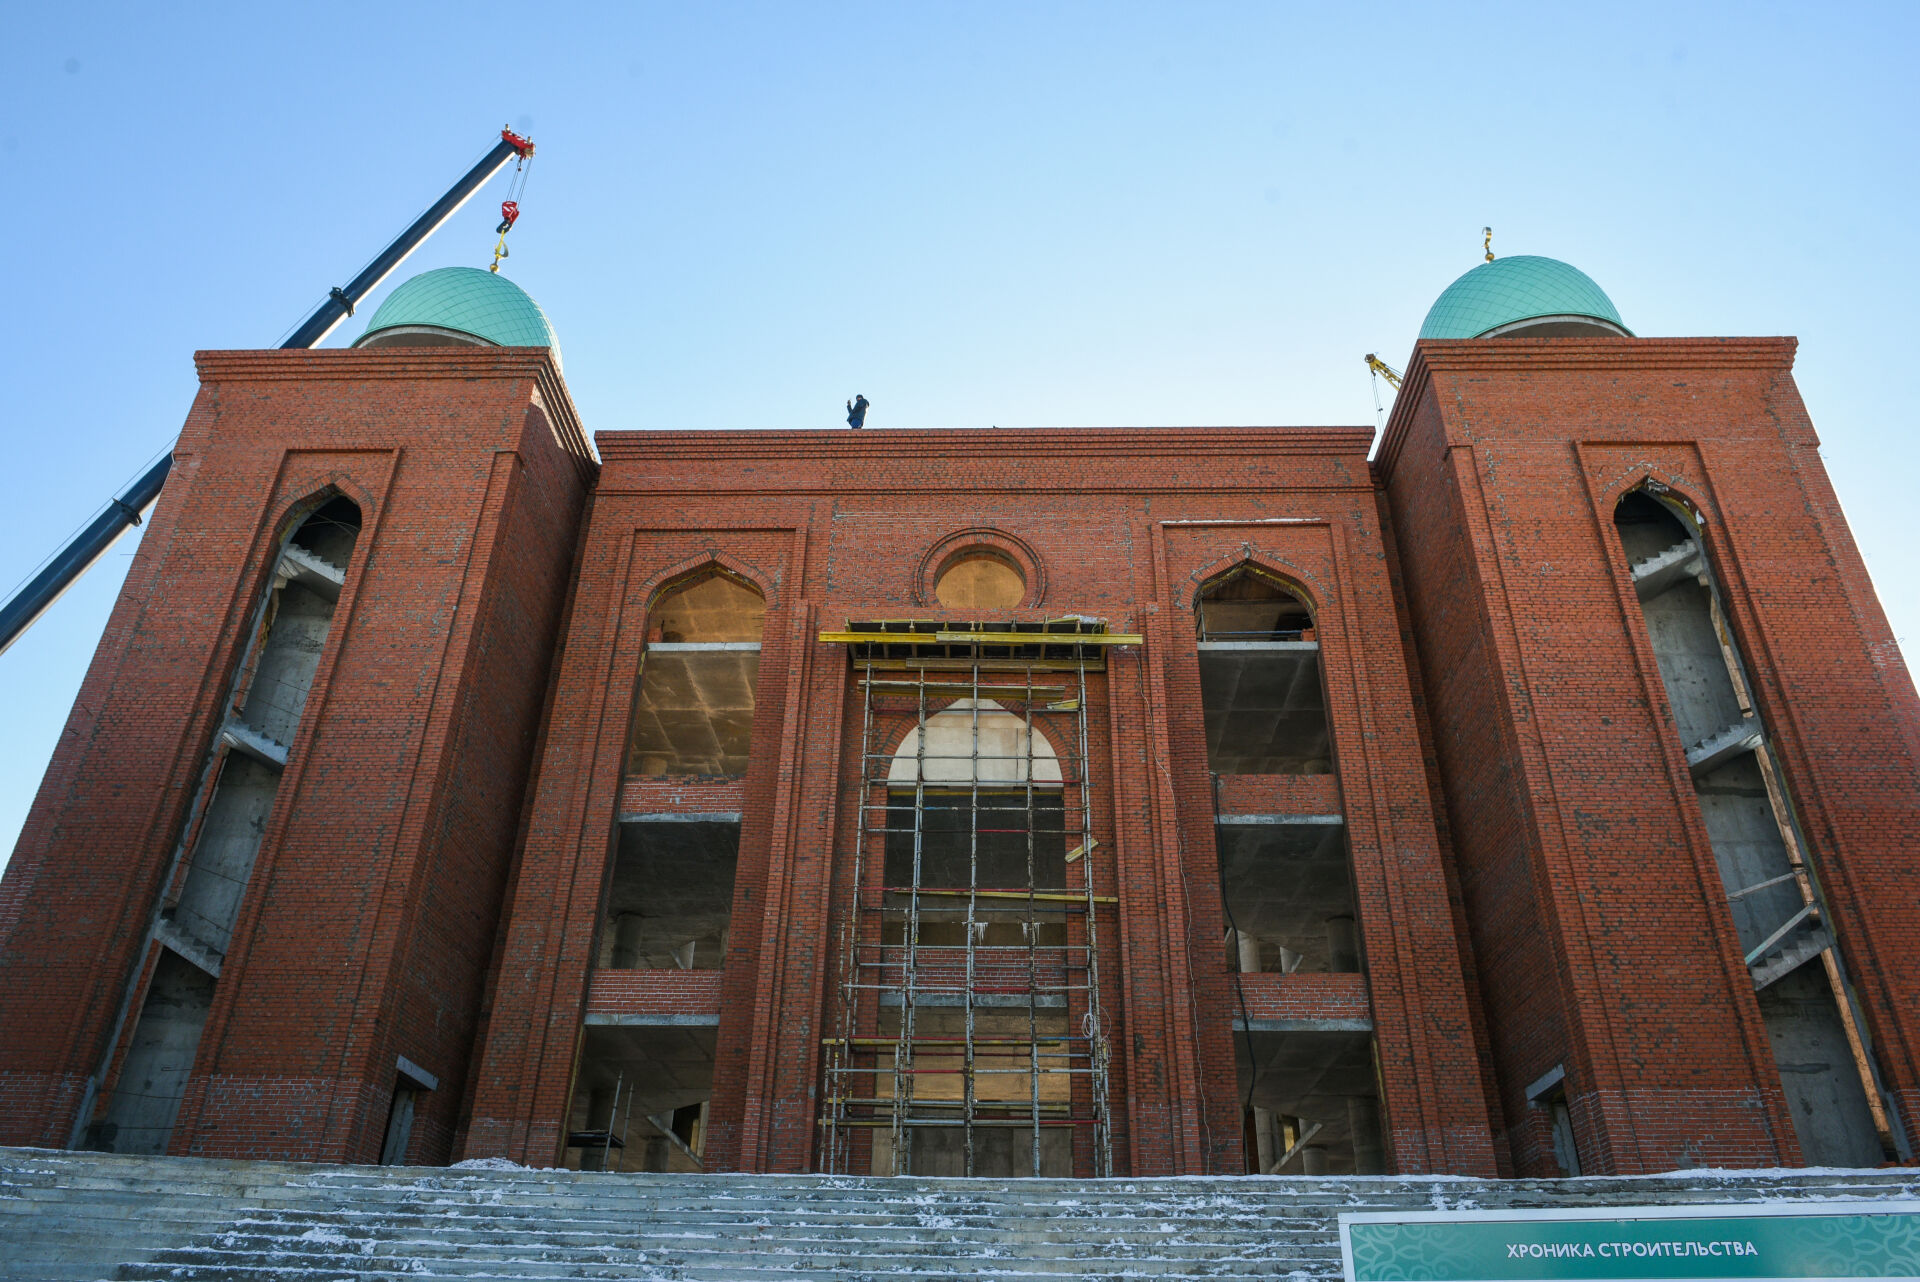 100 тысяч рублей пожертвовали челнинские каменщики на строительство мечети «Джамиг»